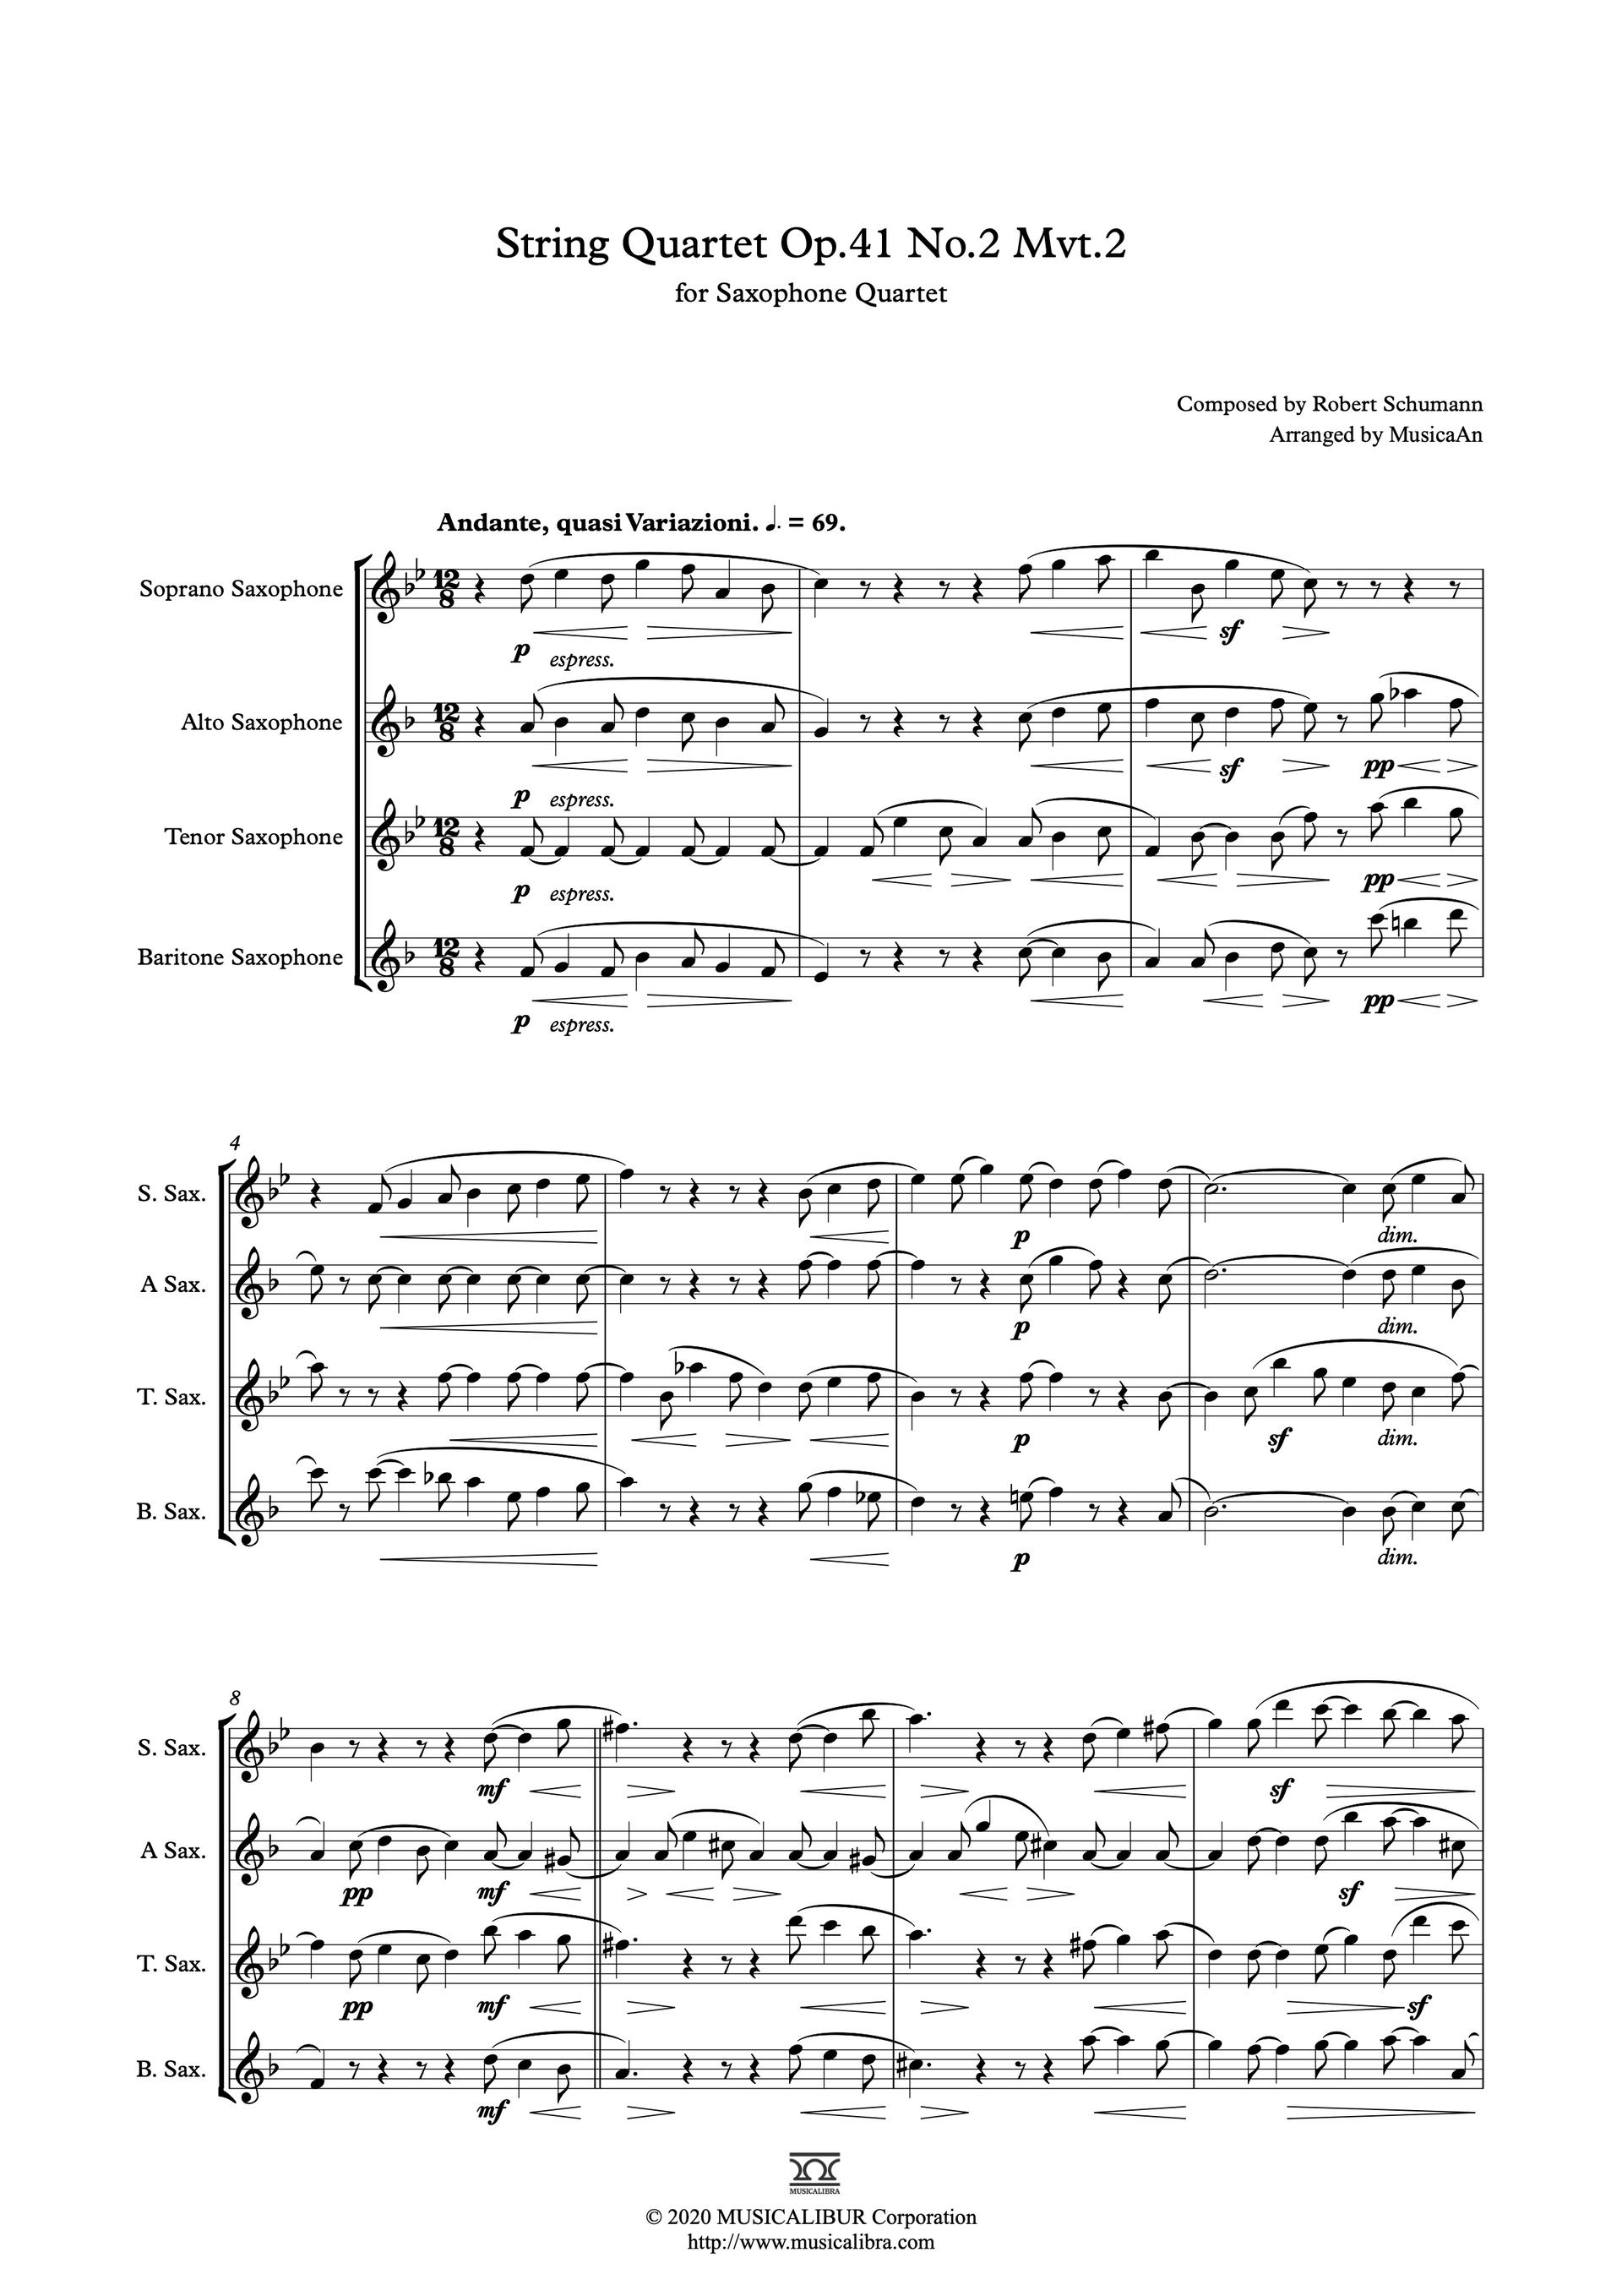 QUARTET SHEET MUSIC] Schumann String Quartet No. 2